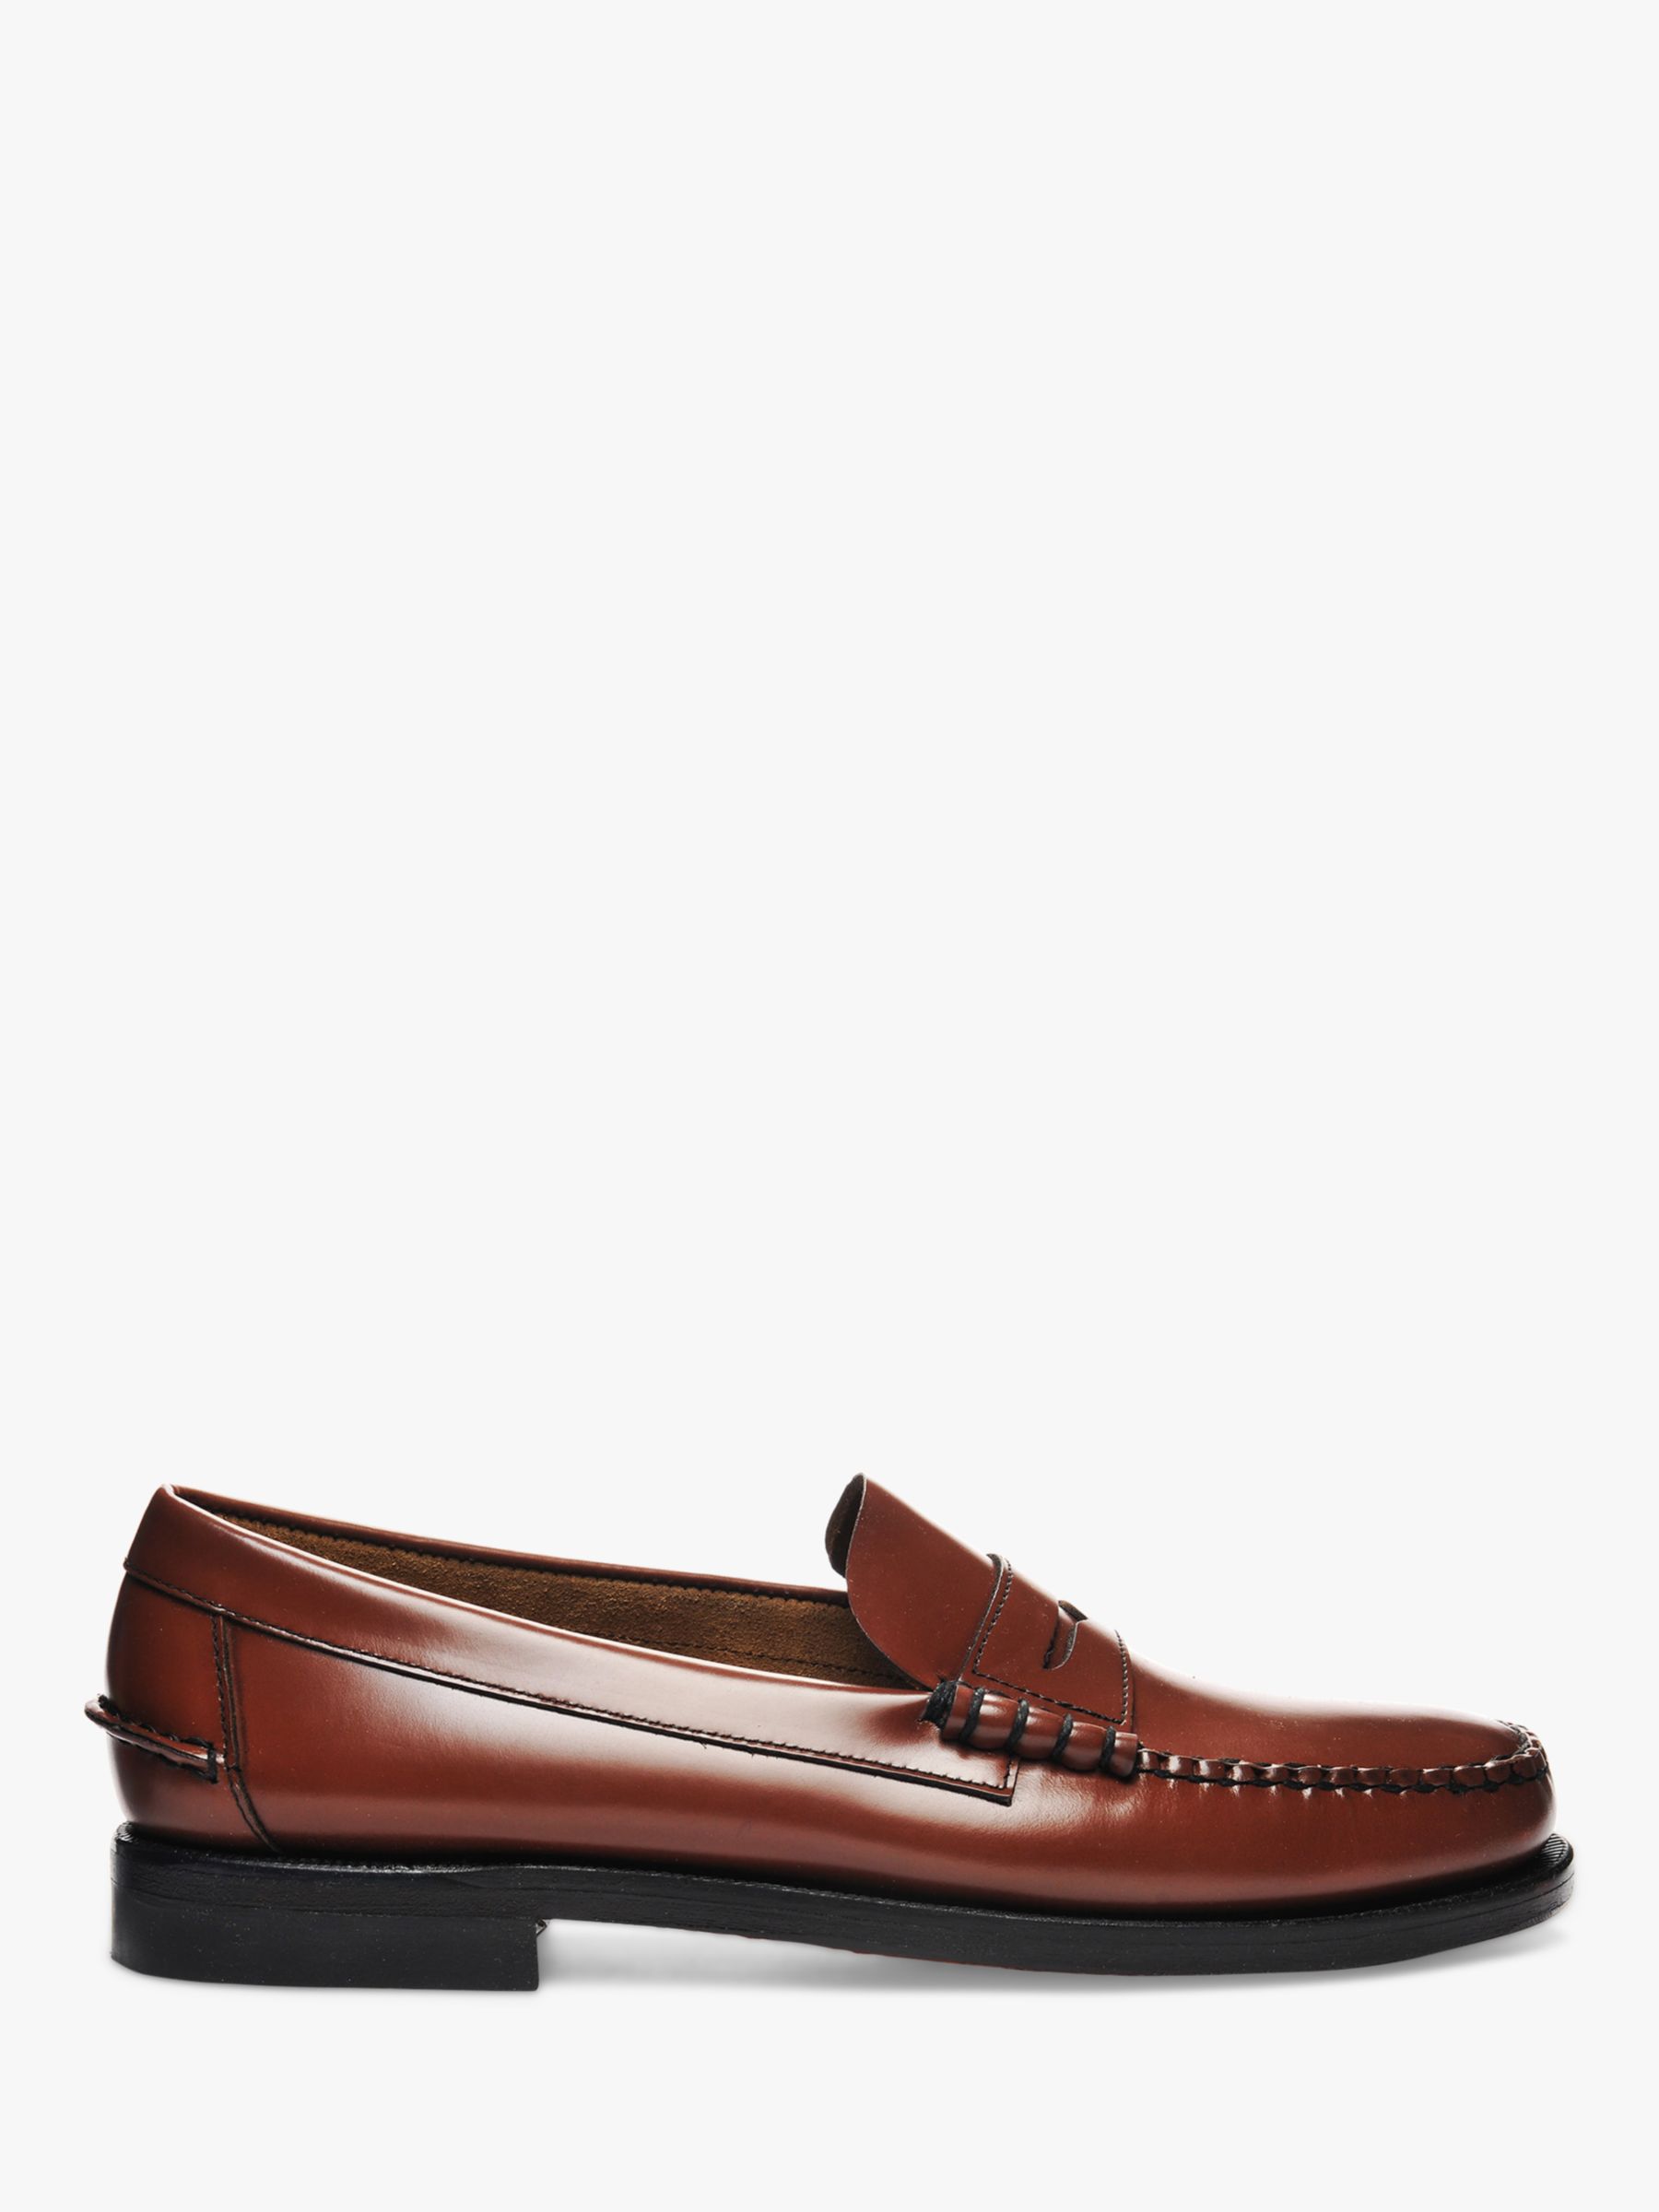 Sebago Classic Dan Leather Loafers, Brown at John Lewis & Partners